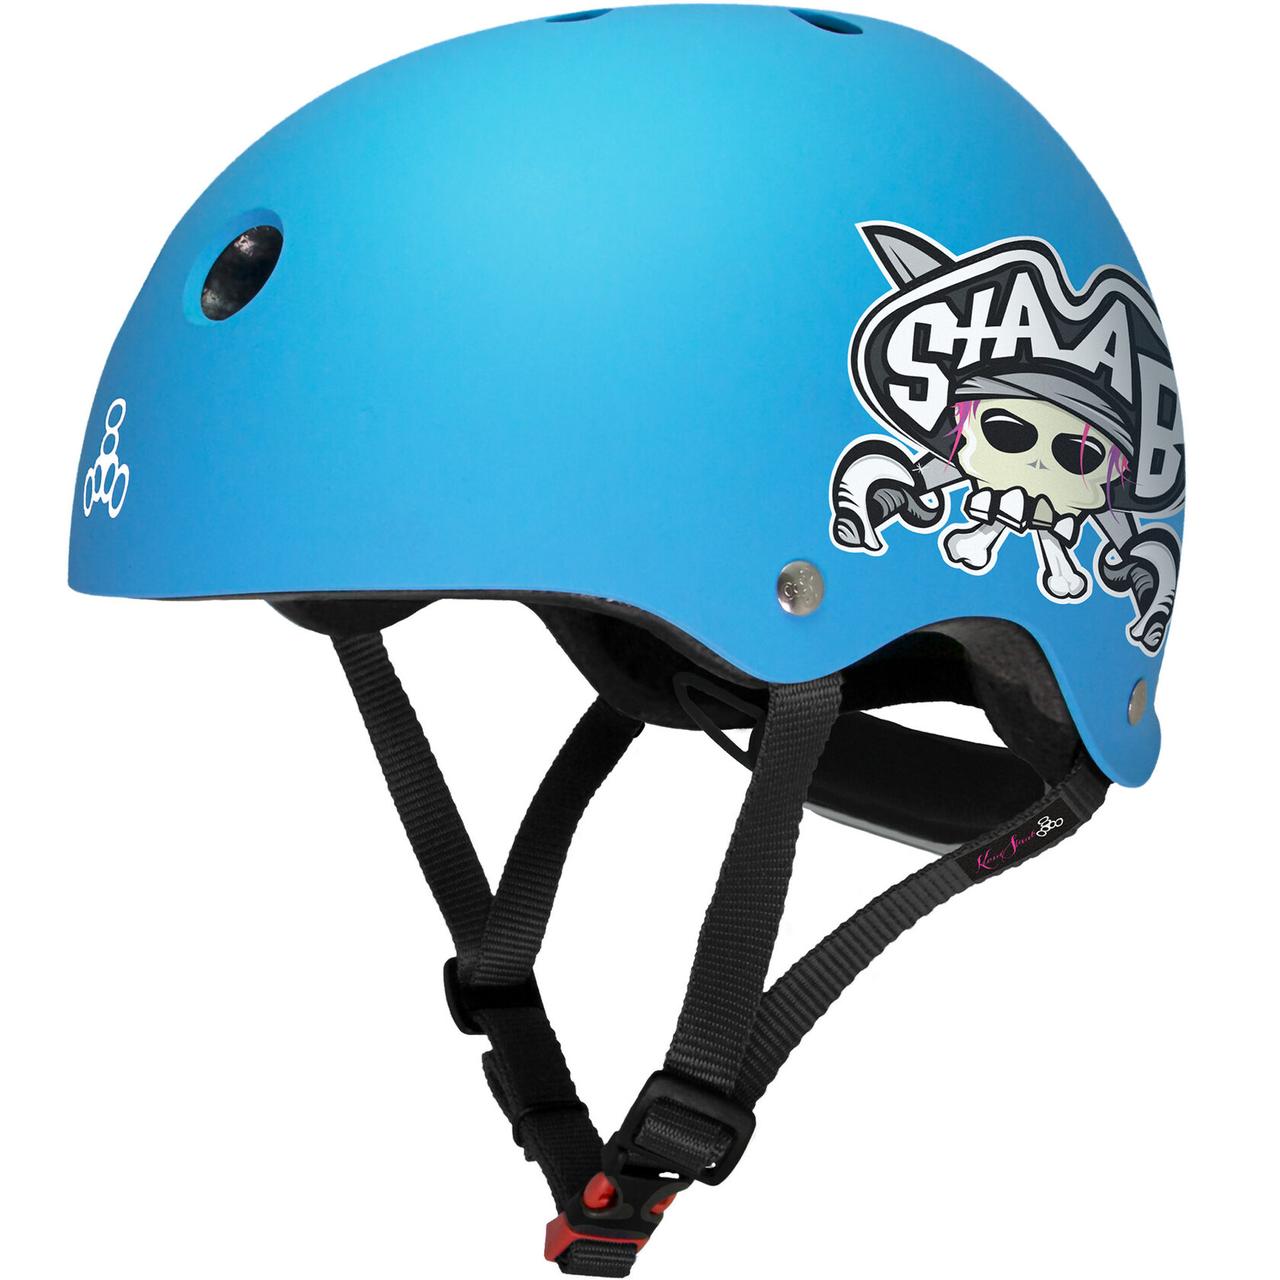 Шлем защитный Triple Eight Lil 8 Staab Neon Blue, 5+, синий шлем защитный triple eight lil 8 staab neon blue 5 синий